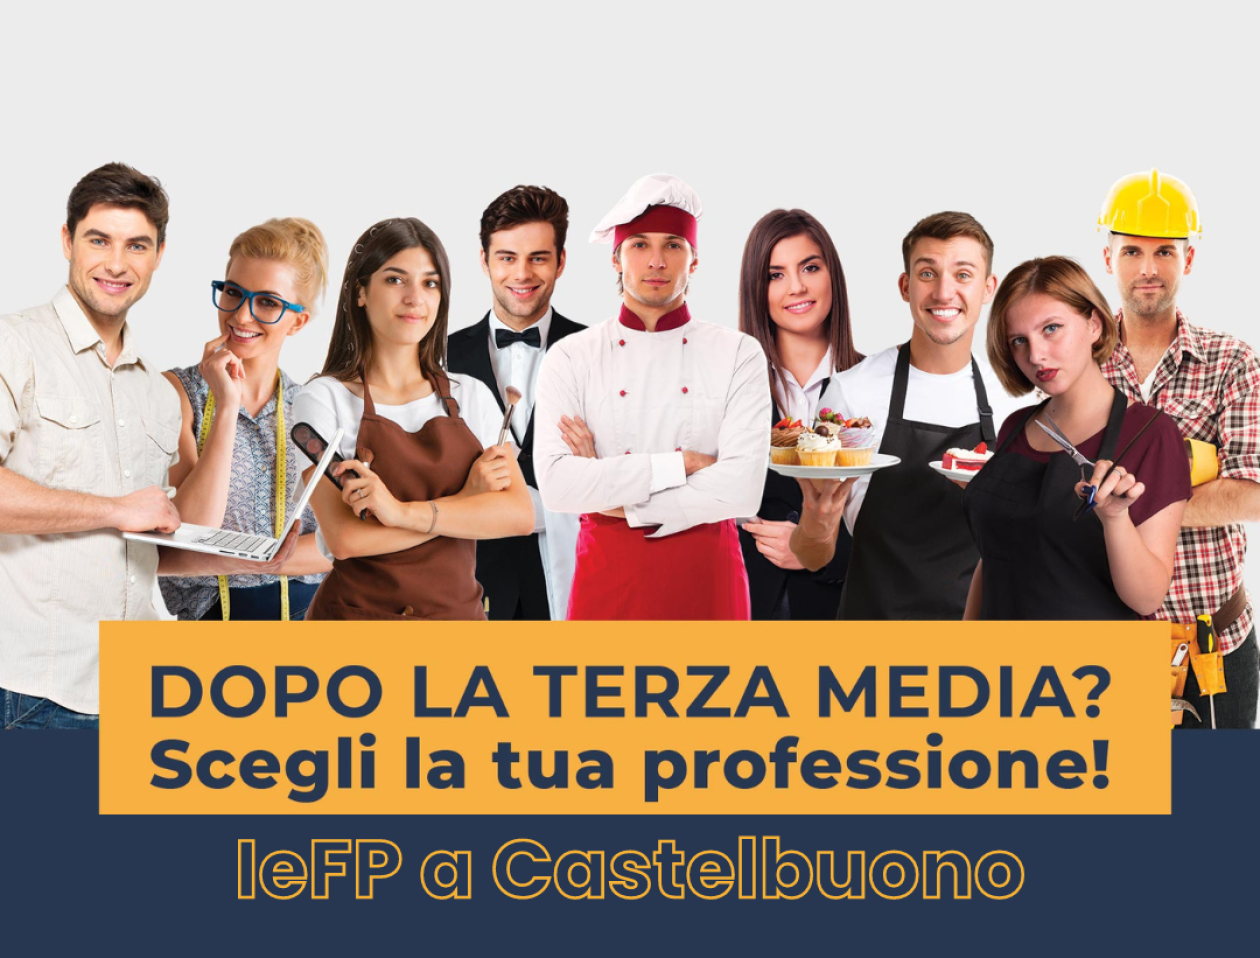 IeFP Castelbuono